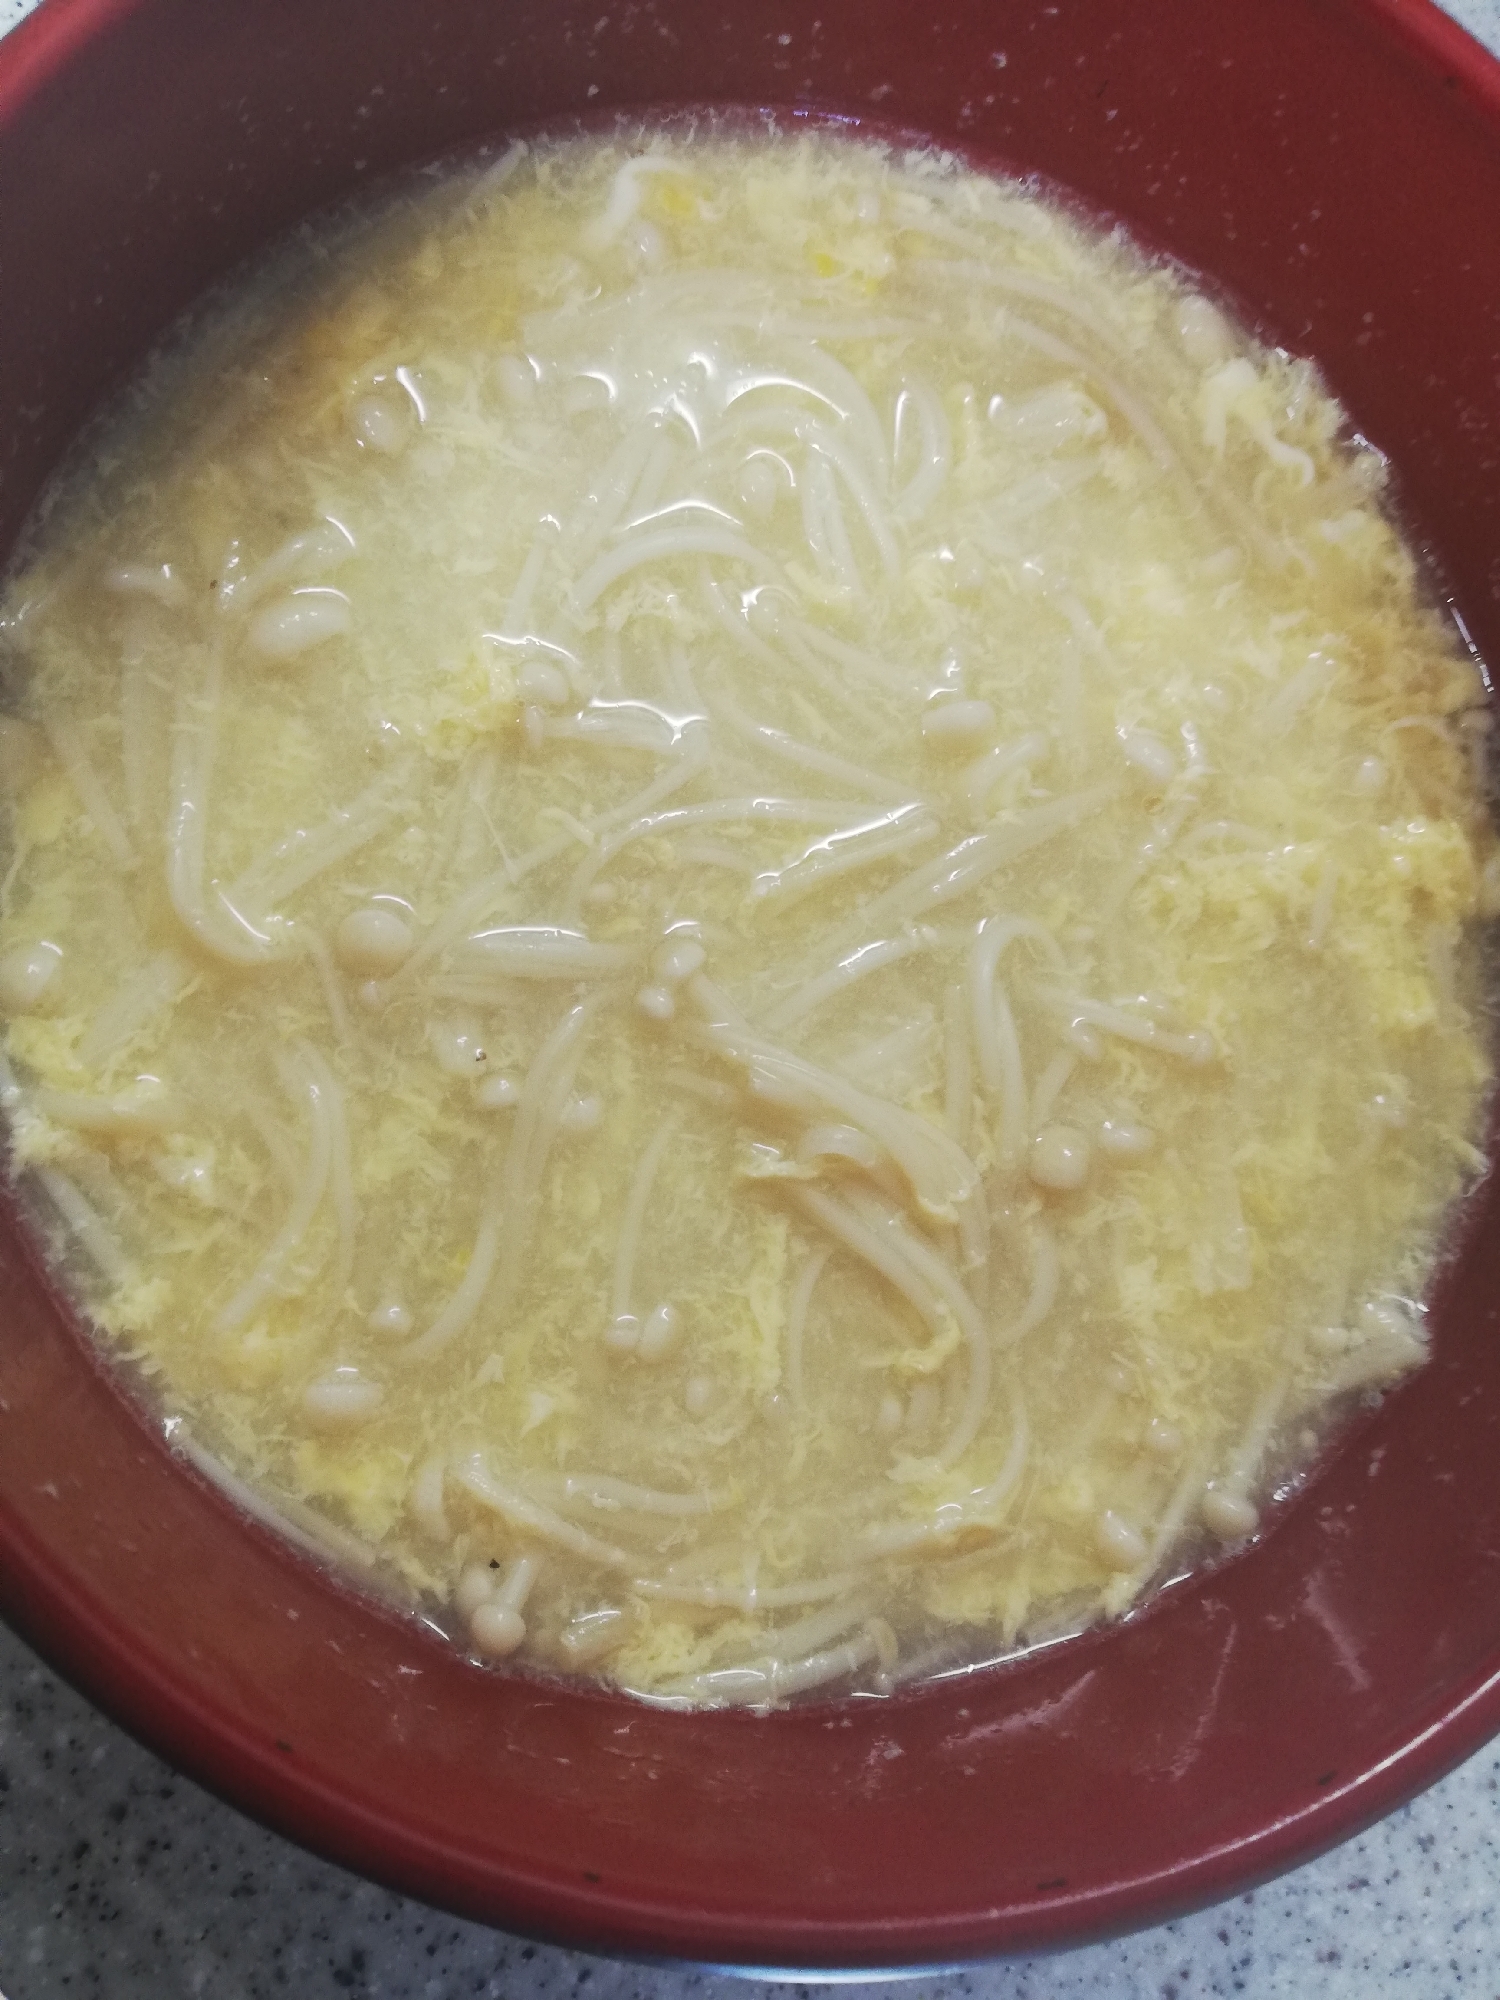 えのきと卵の中華スープ